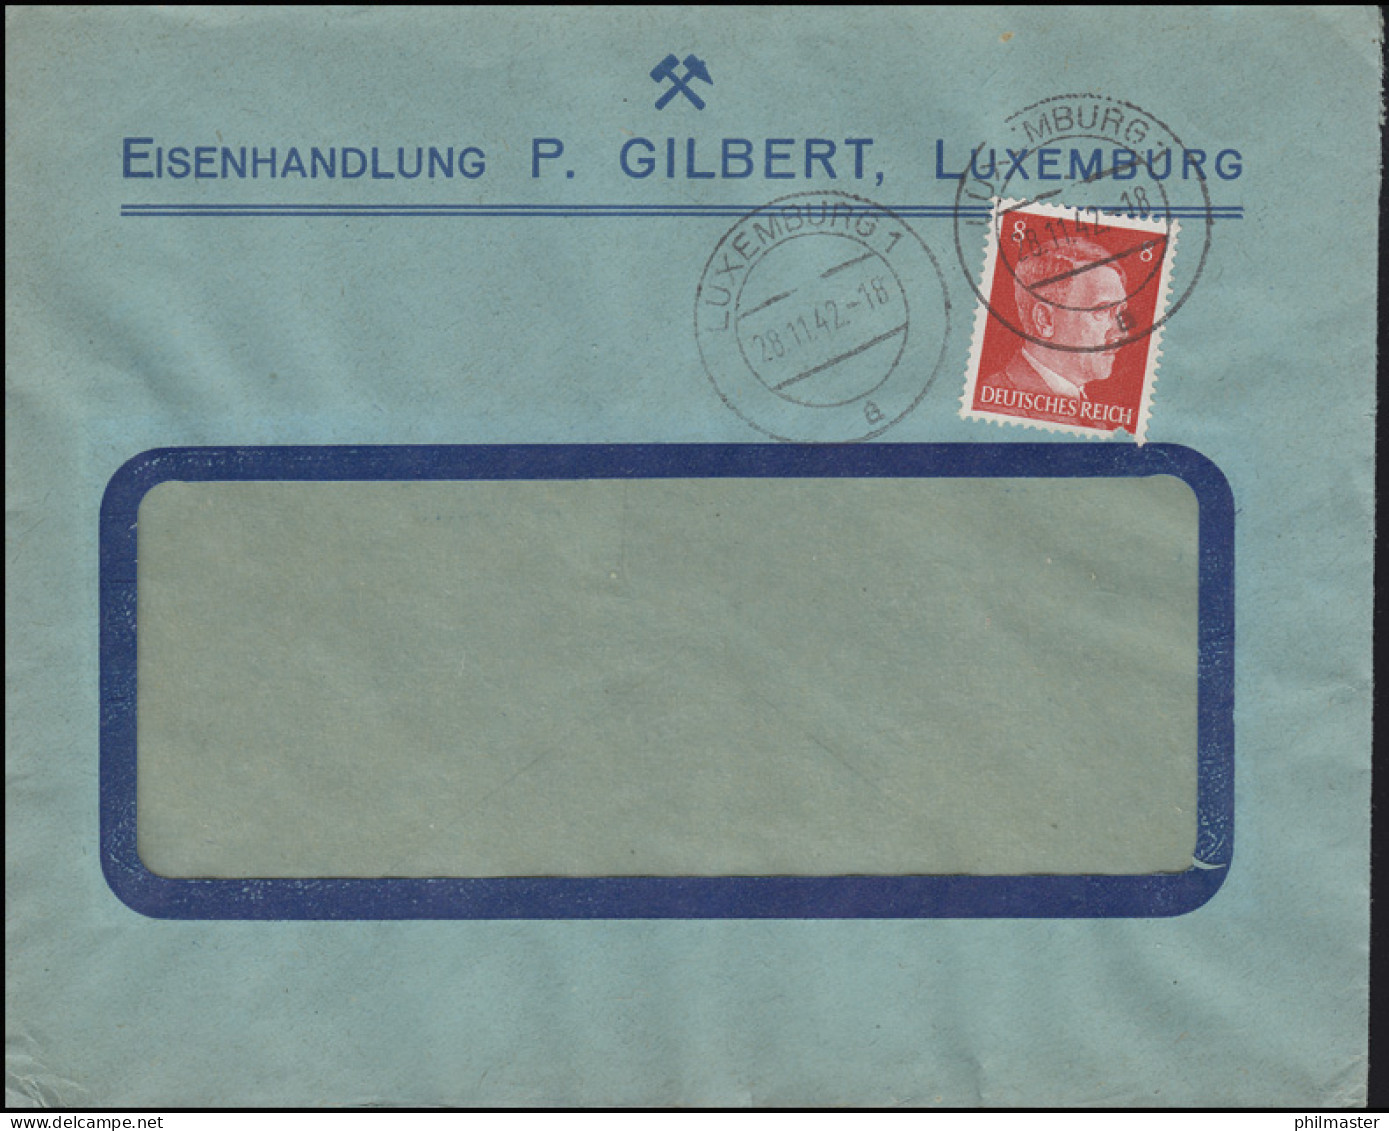 Freimarke Hitler 8 Pf. Fensterbrief Eisenhandlung Gilbert LUXEMBURG 28.11.42 - Factories & Industries